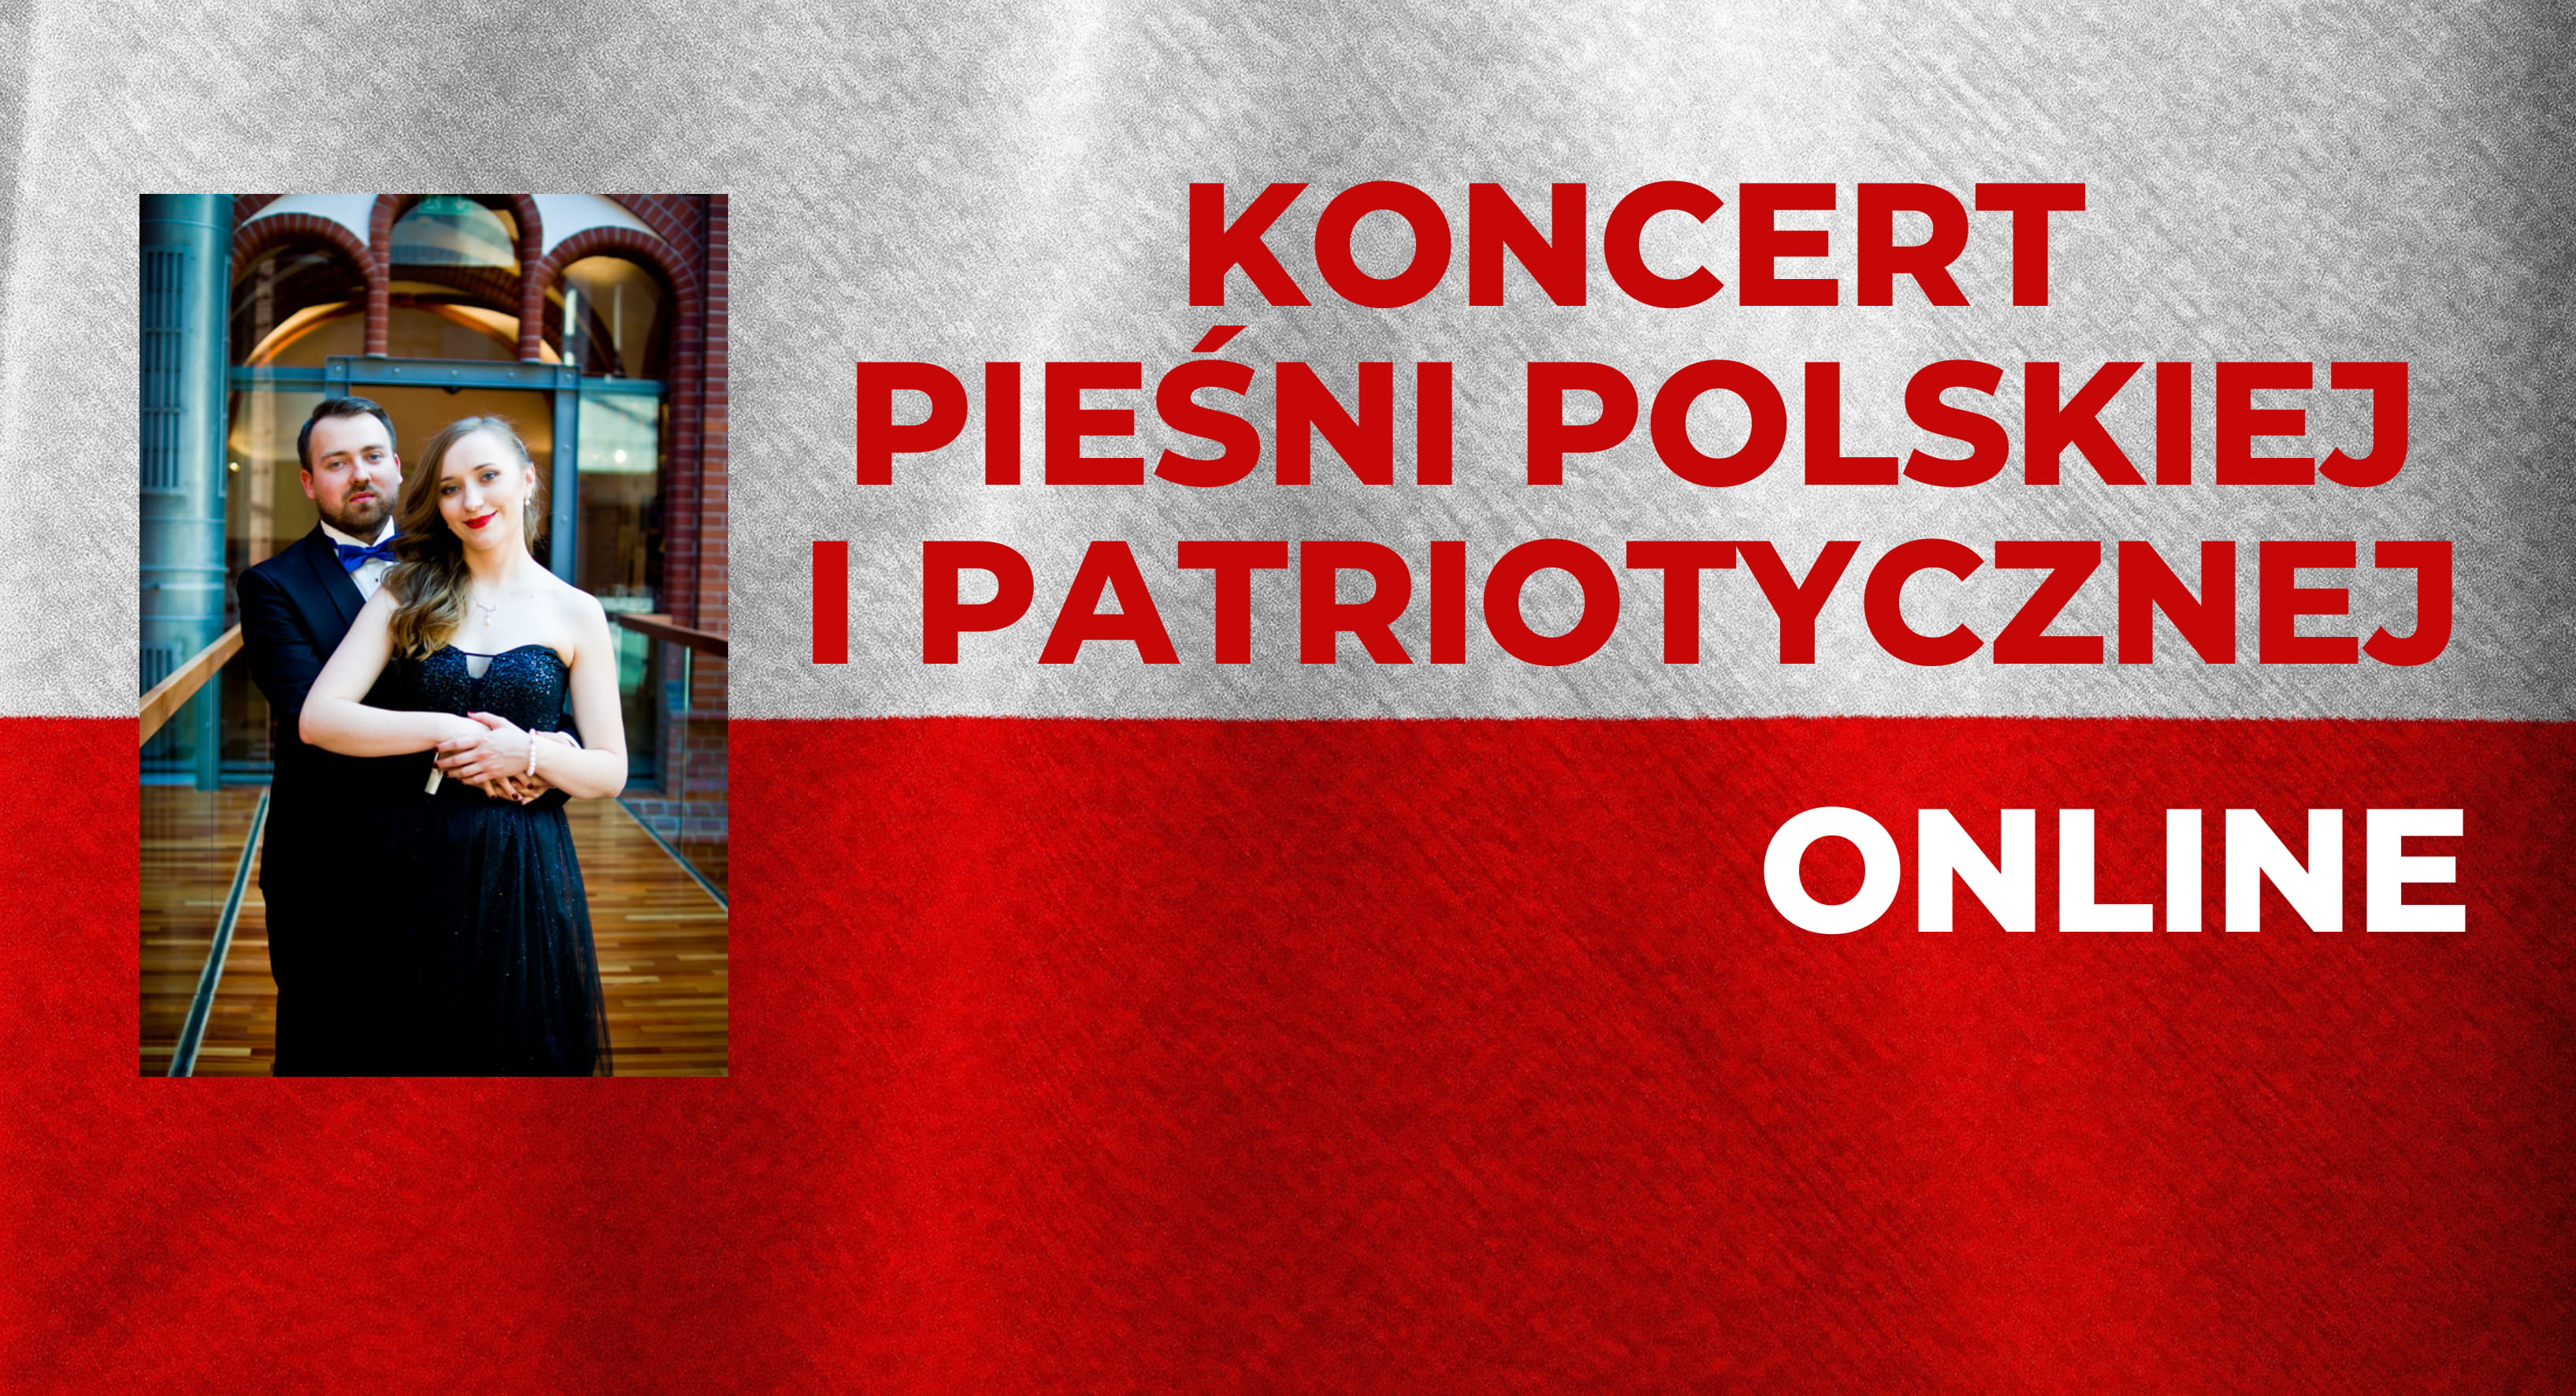 Slier na koncert pieśni polskiej i patriotycznej - w wersji online 11 listopada 2020 roku